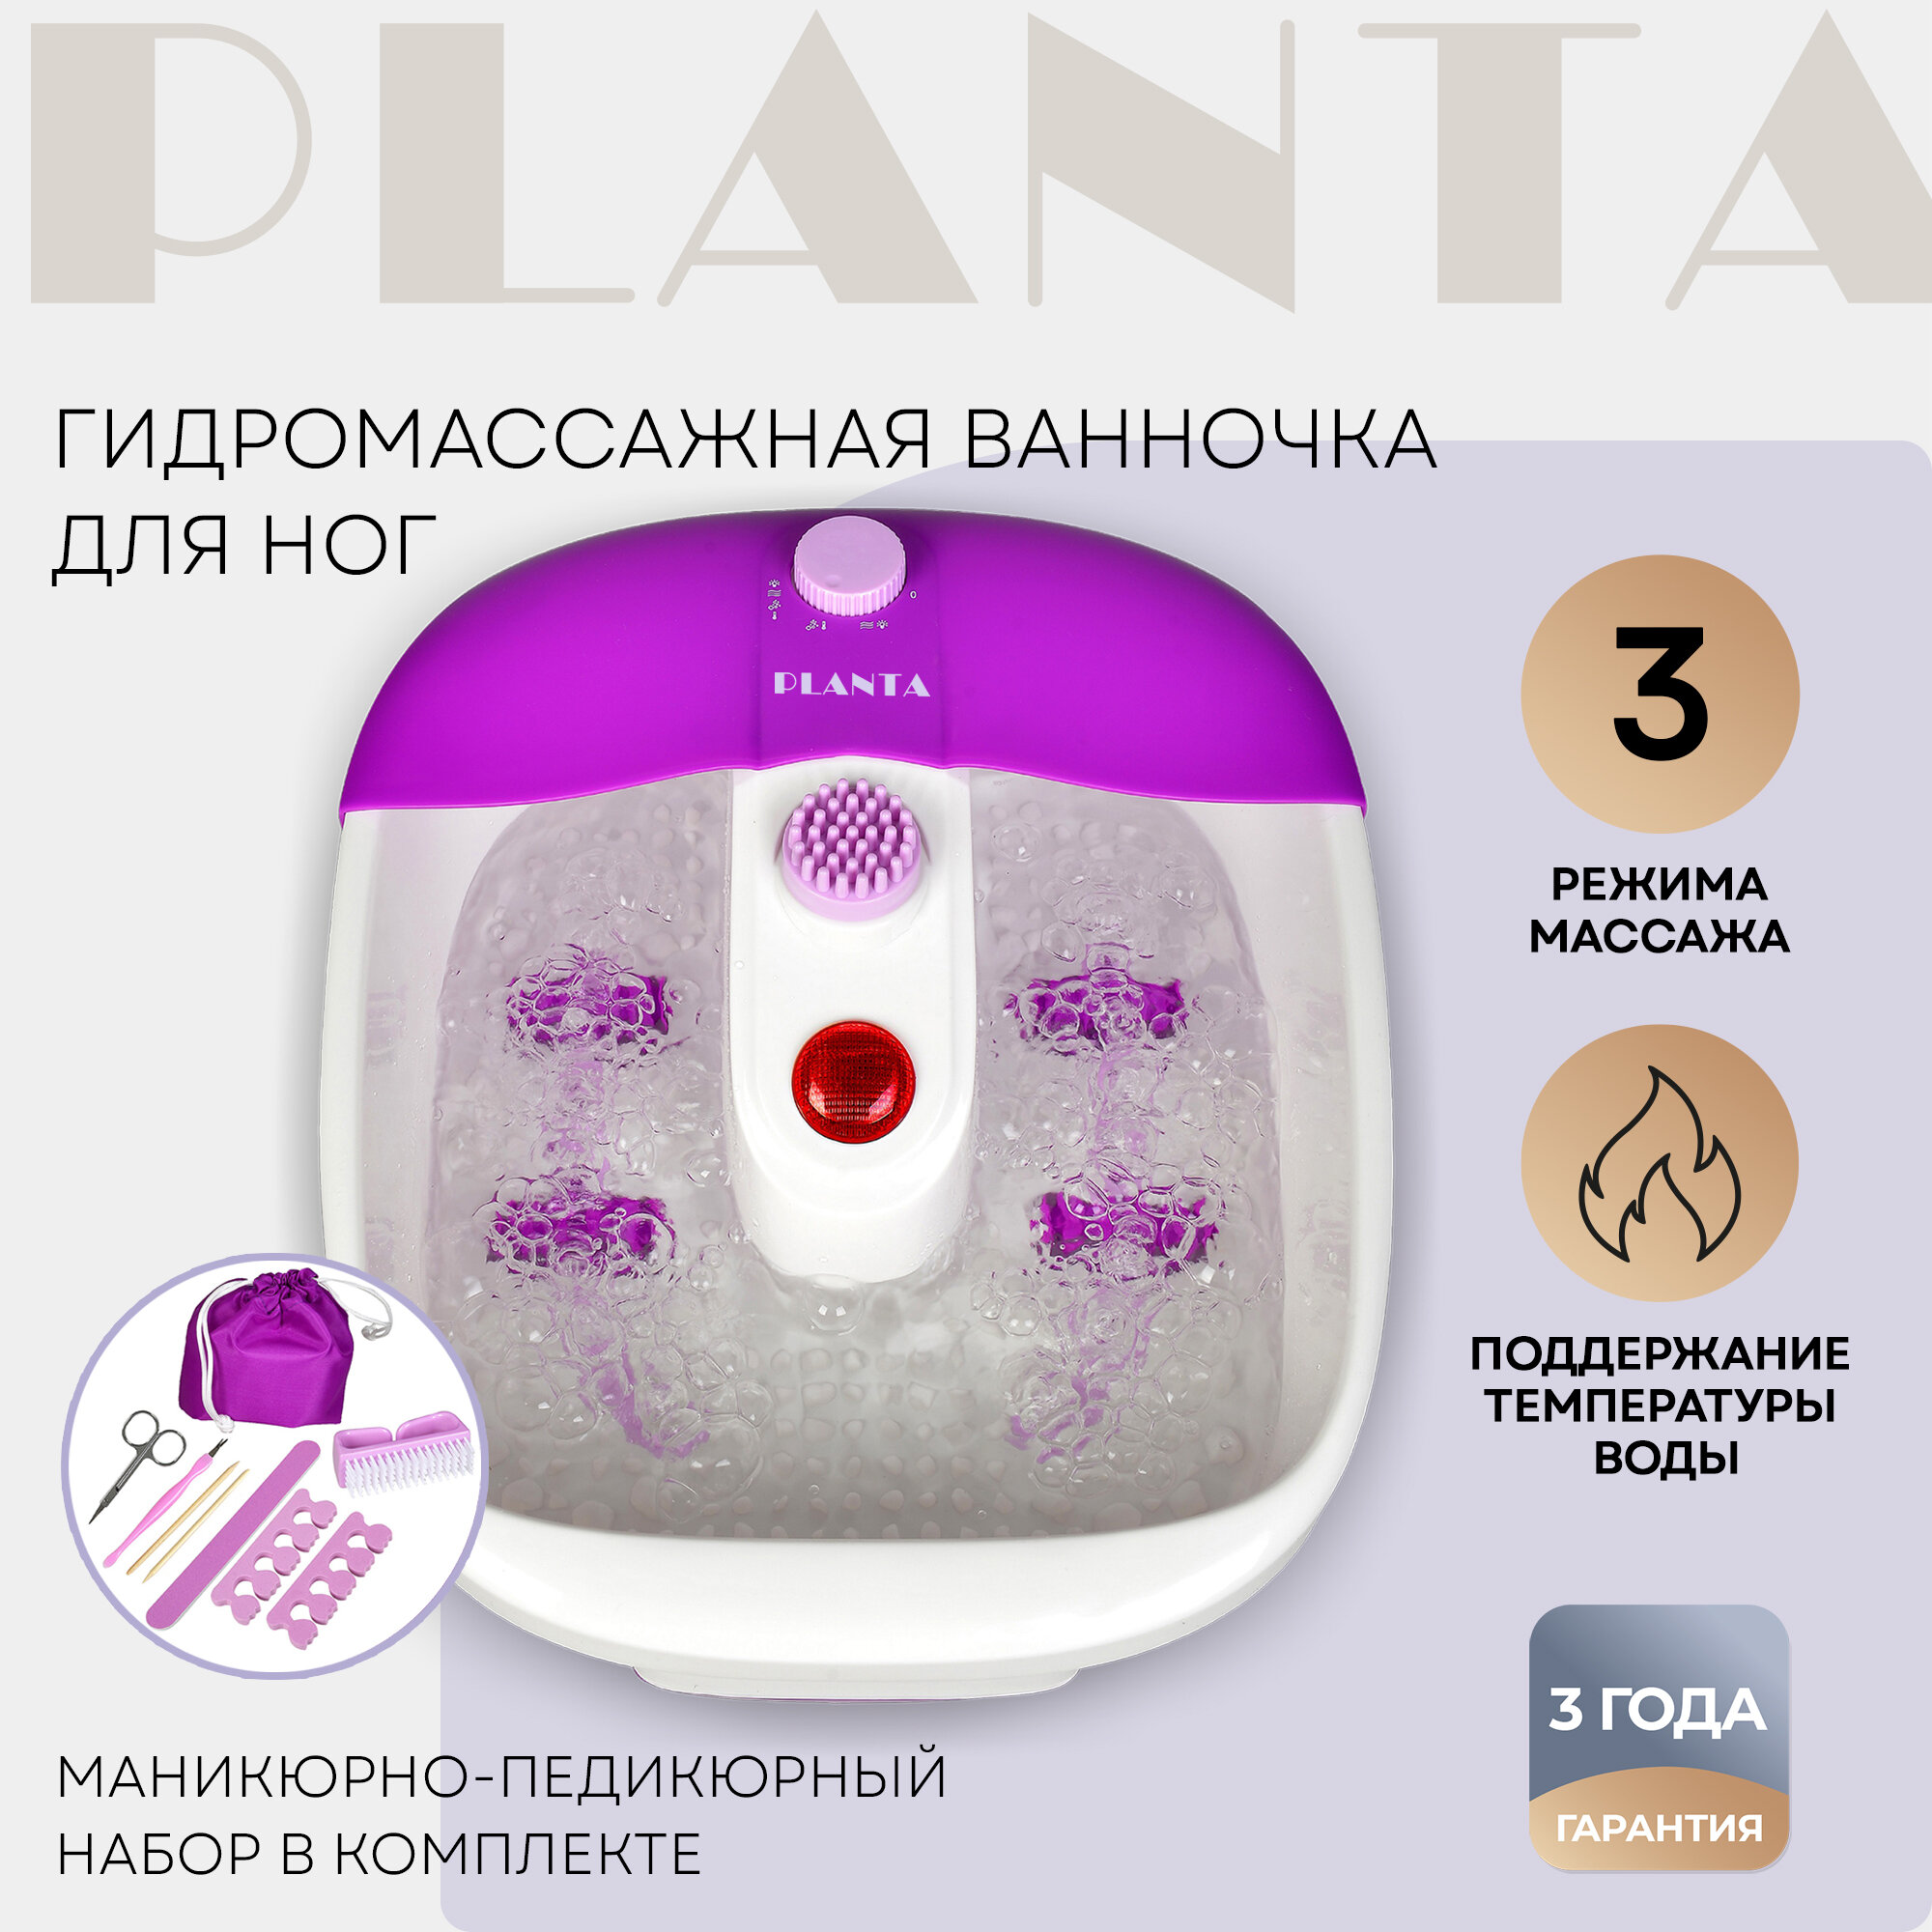 Ванночка гидромассажная PLANTA MFS-200V Spa Salon белый/фиолетовый